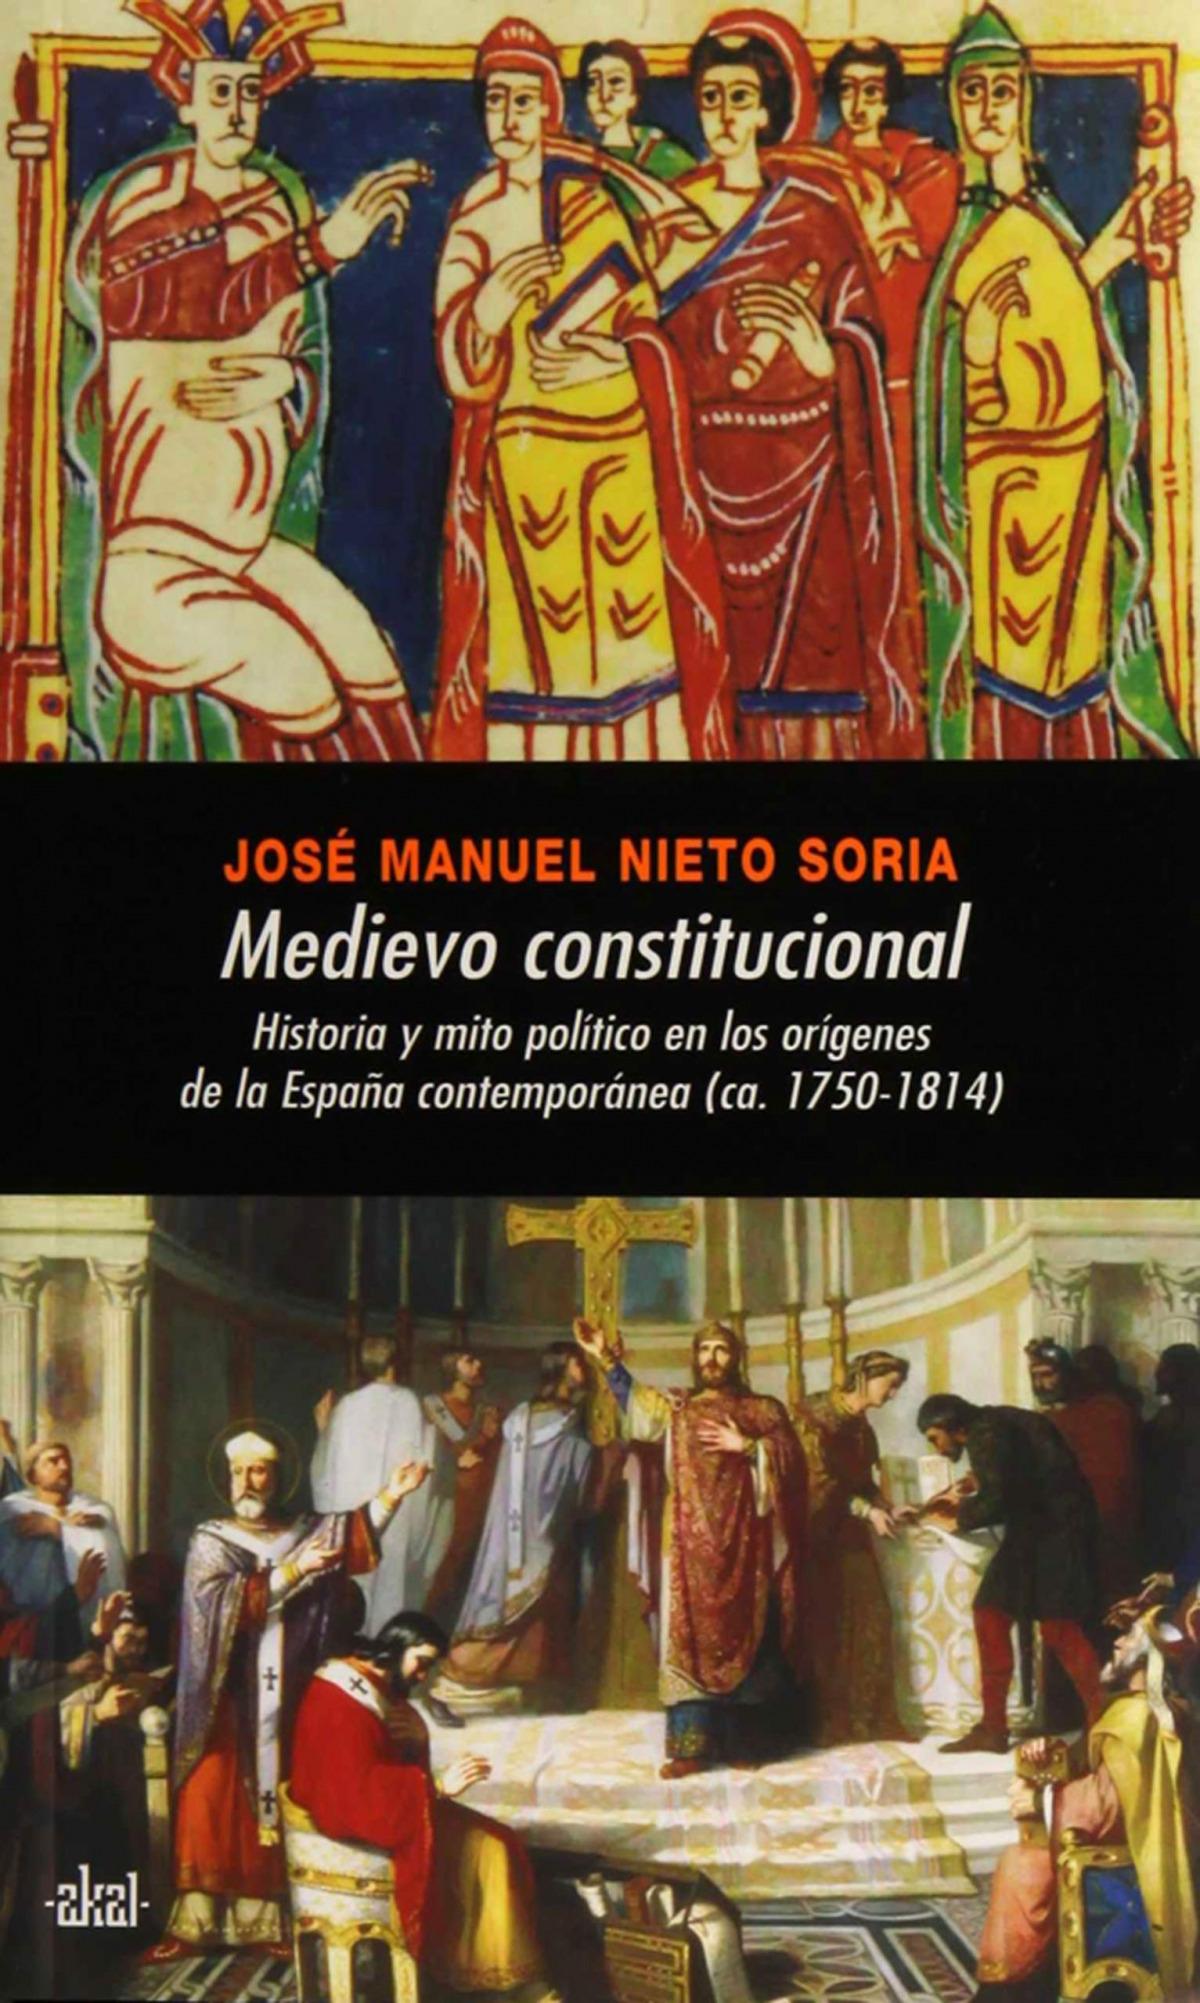 Medievo constitucional "Historia y mito político en los orígenes de la España"